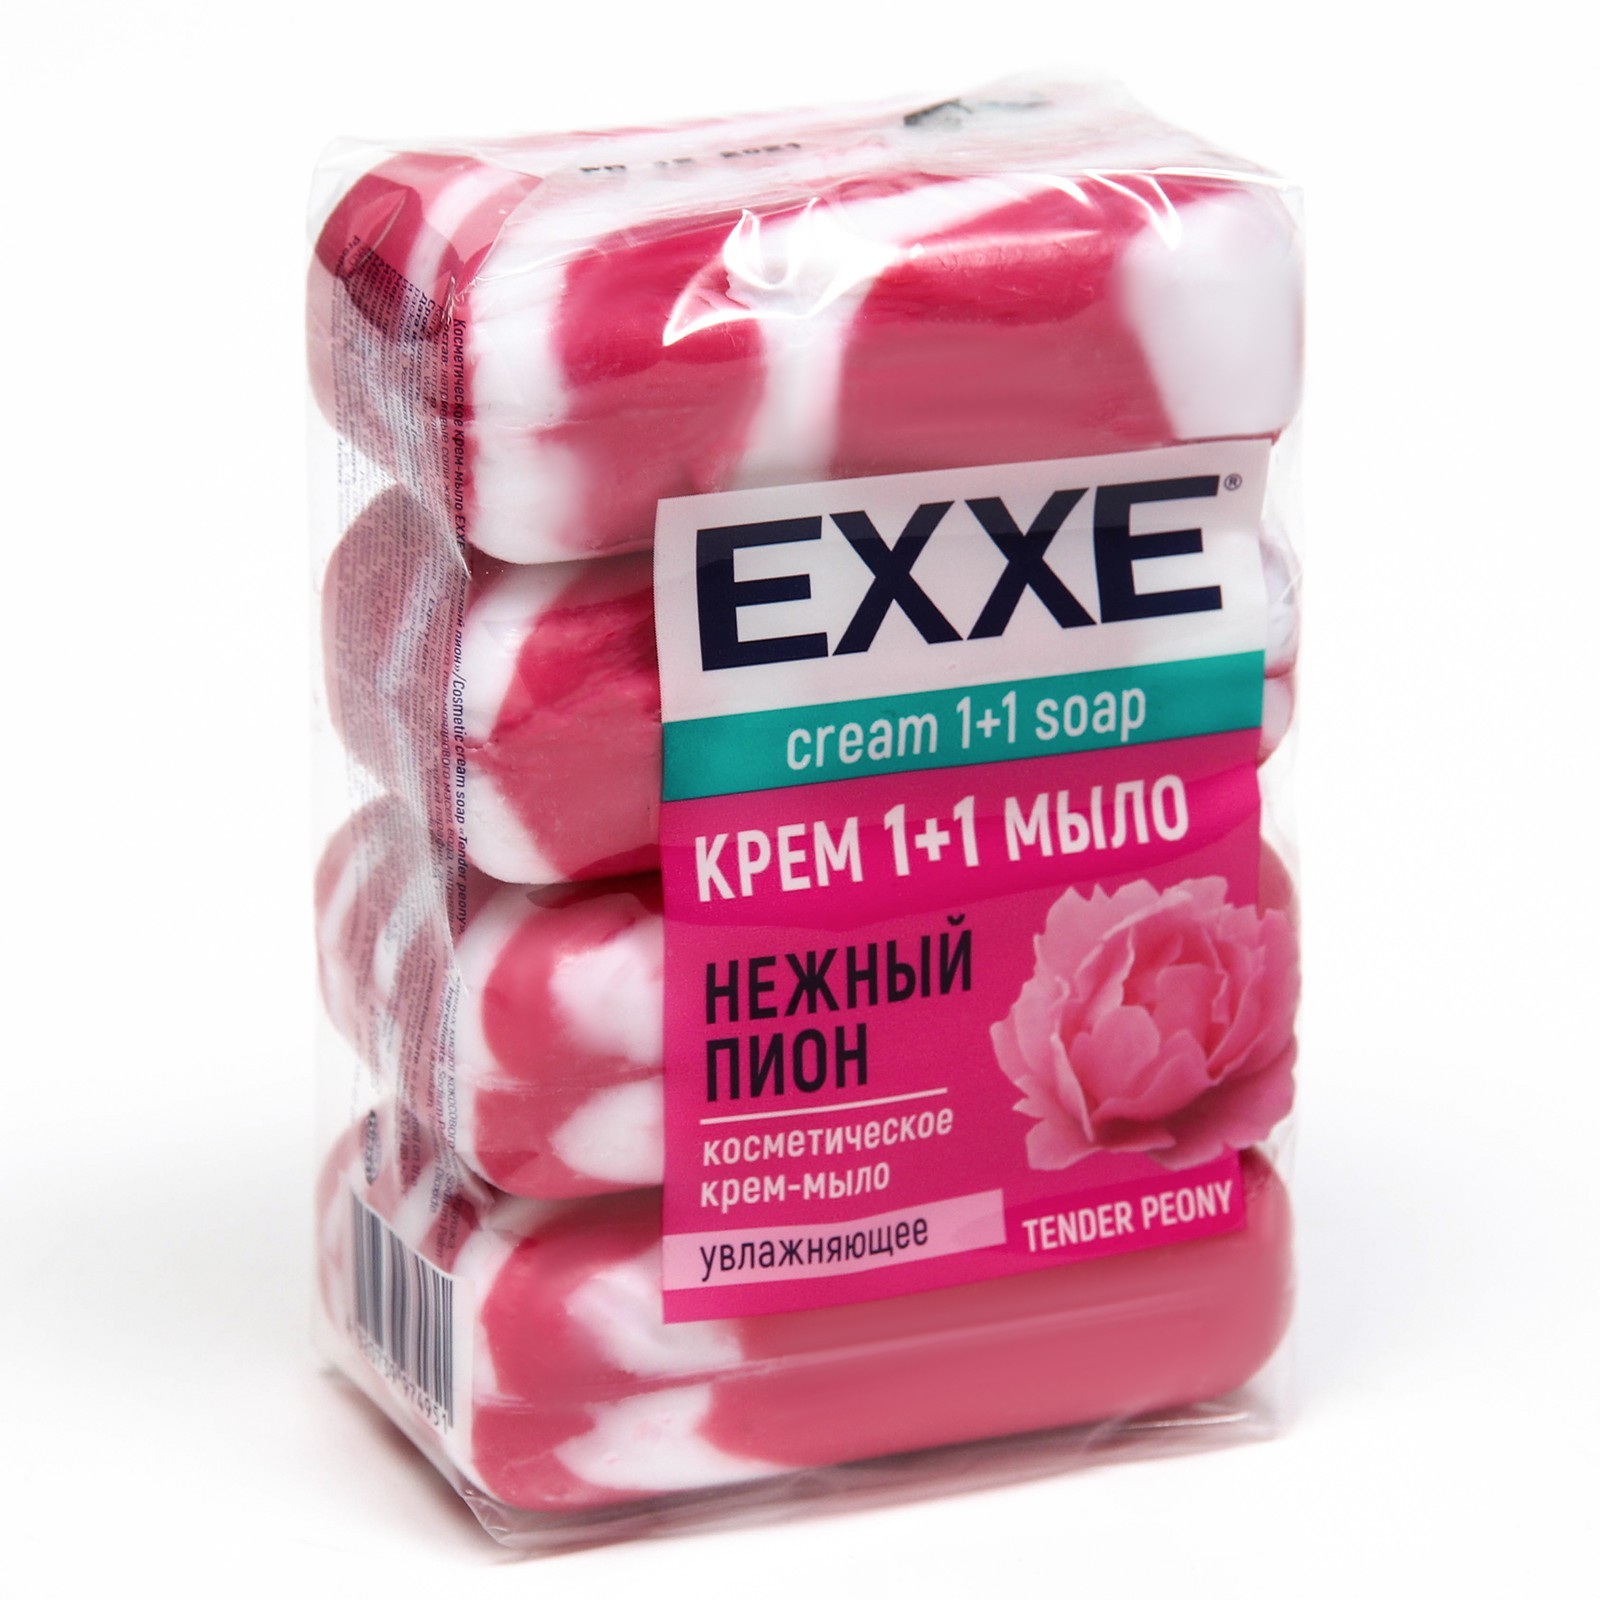 Крем-мыло 1+1 EXXE  "Нежный пион" 6820 (4шт.*90г.) (Розовое полосатое) Экопак